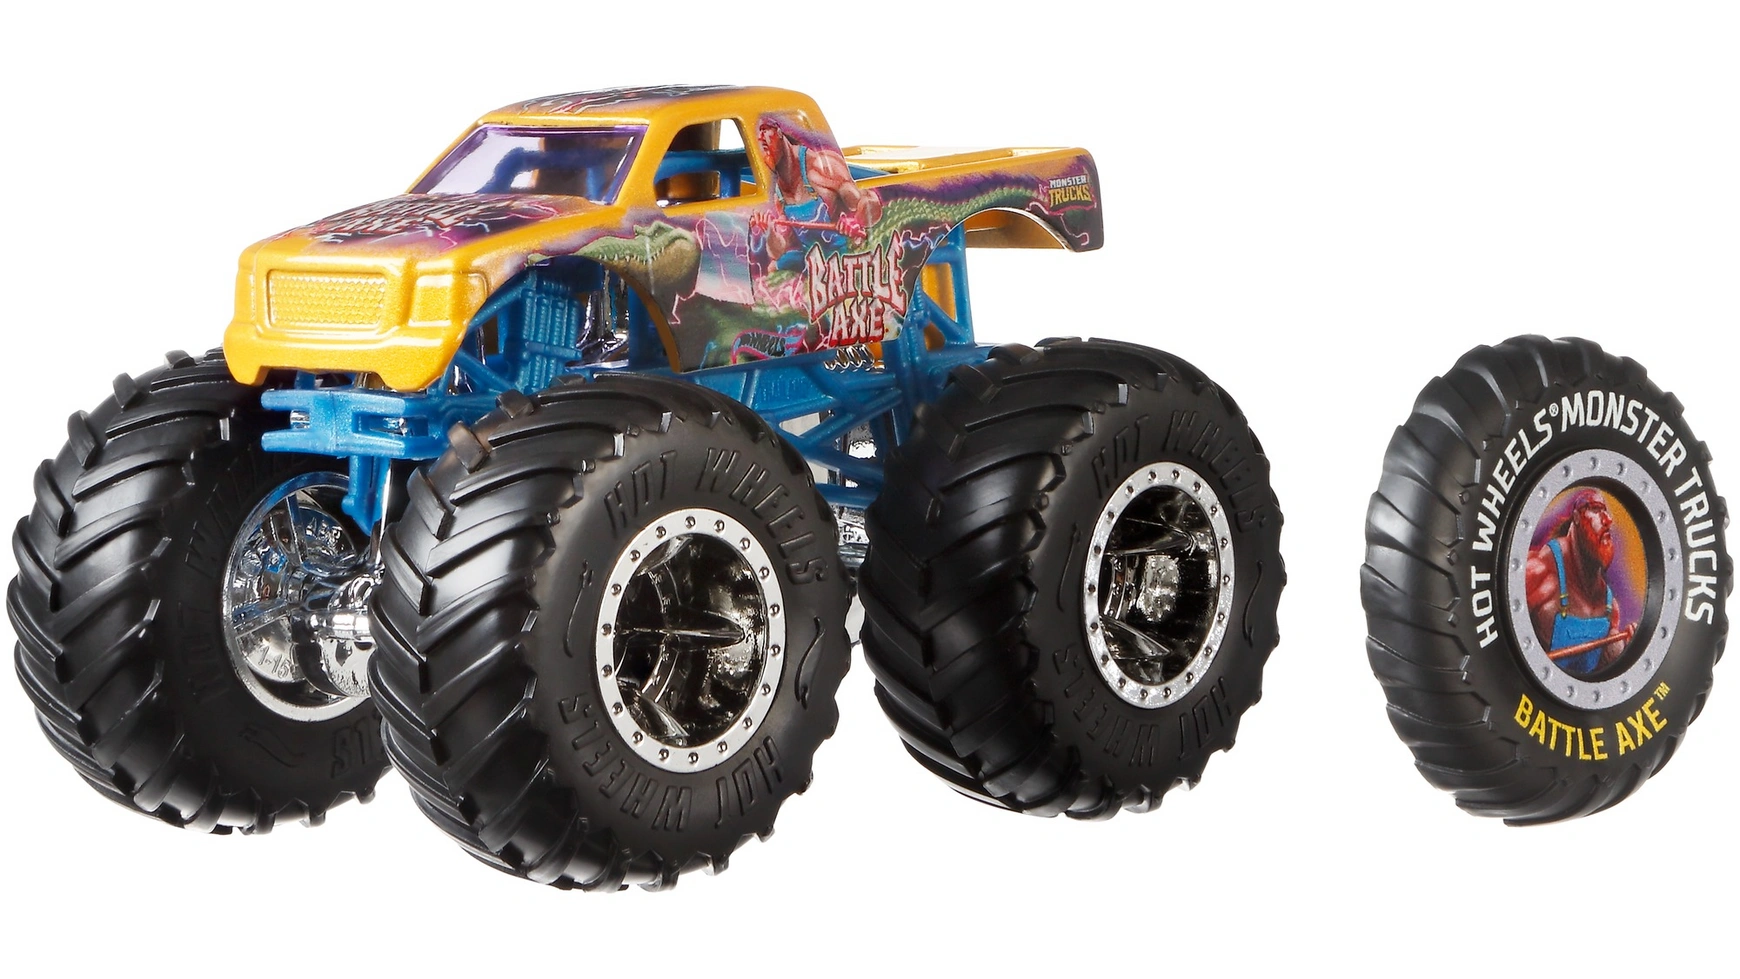 Набор литых под давлением монстр-траков Hot Wheels 1:64 игрушка на радиоуправлении 1 toy hot wheels багги красная т10968